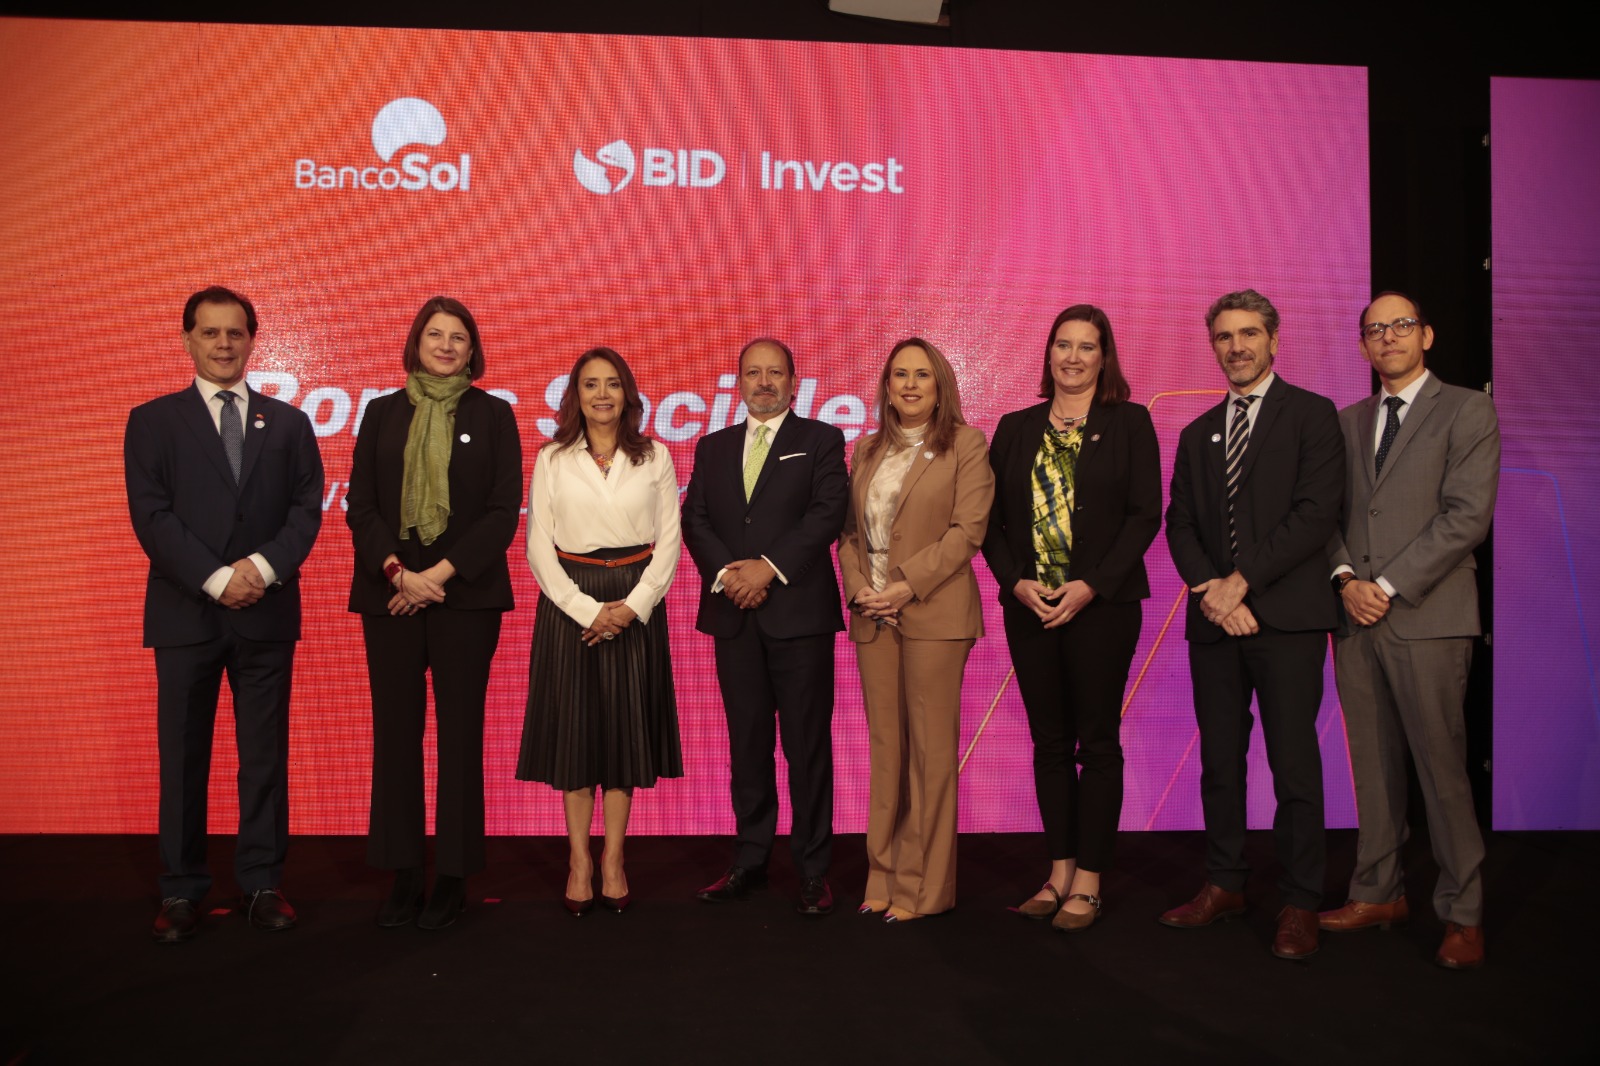 BancoSol y BID Invest promueven los negocios liderados por mujeres a través del primer bono de género en Bolivia